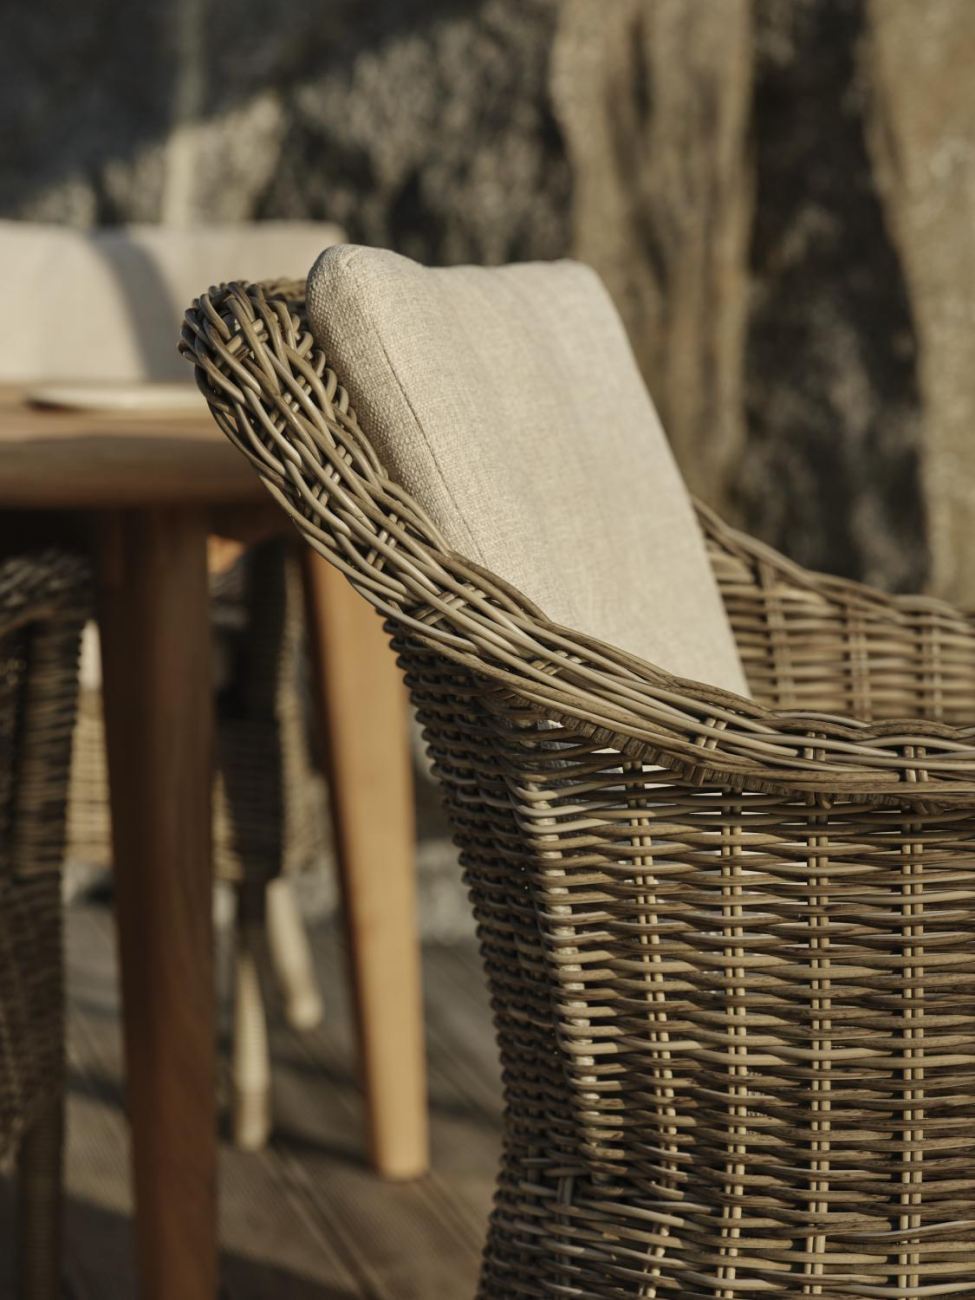 Der Gartenstuhl Lenora überzeugt mit seinem modernen Design. Gefertigt wurde er aus Rattan, welcher einen braunen Farbton besitzt. Das Gestell ist aus Metall und hat eine schwarze Farbe. Die Sitzhöhe des Stuhls beträgt 50 cm.